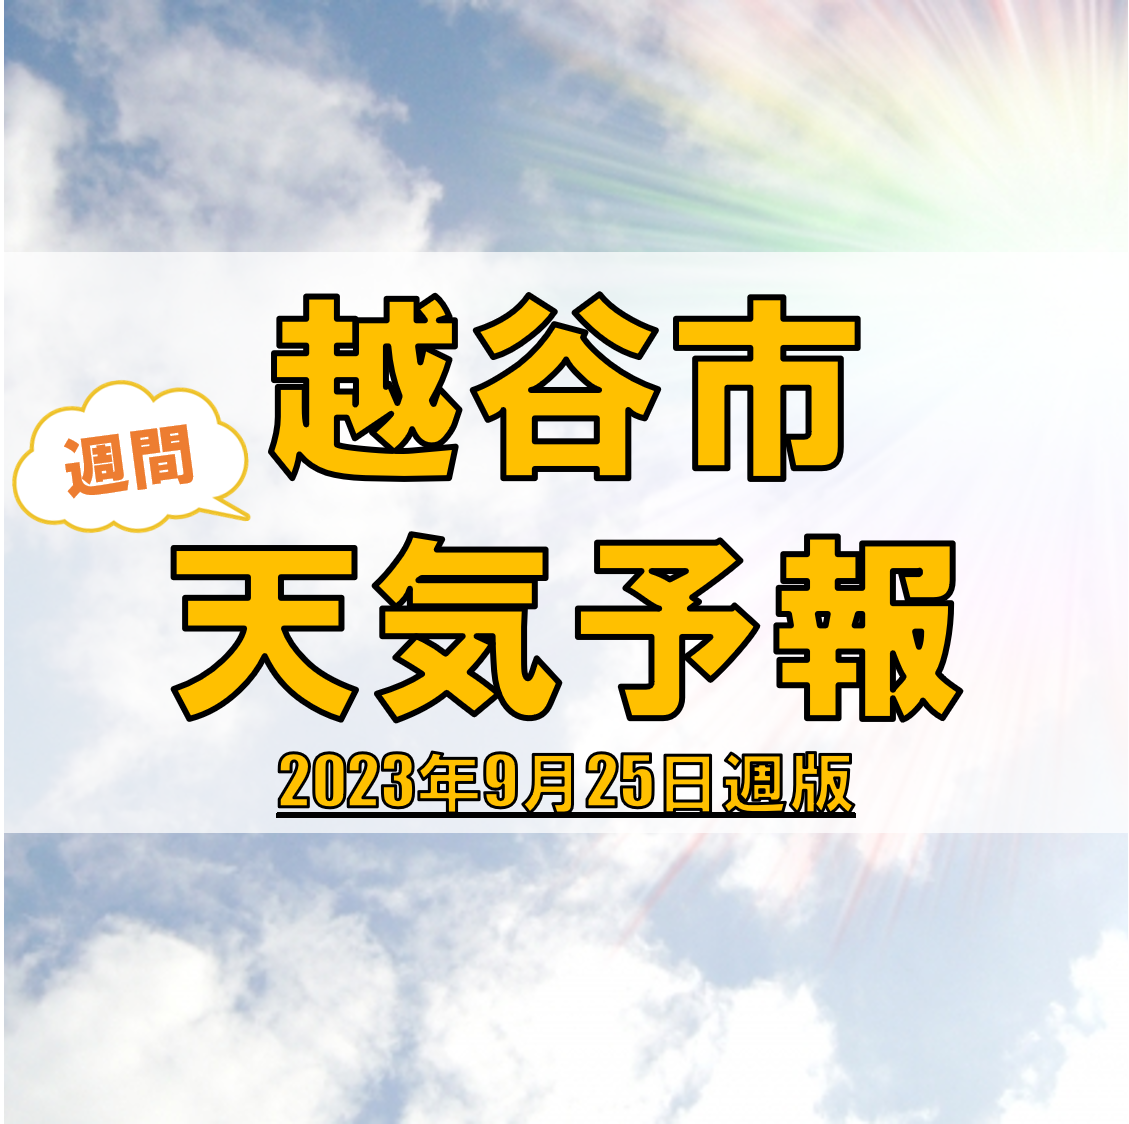 越谷市の天気 週間予報【2023年9月25日週】